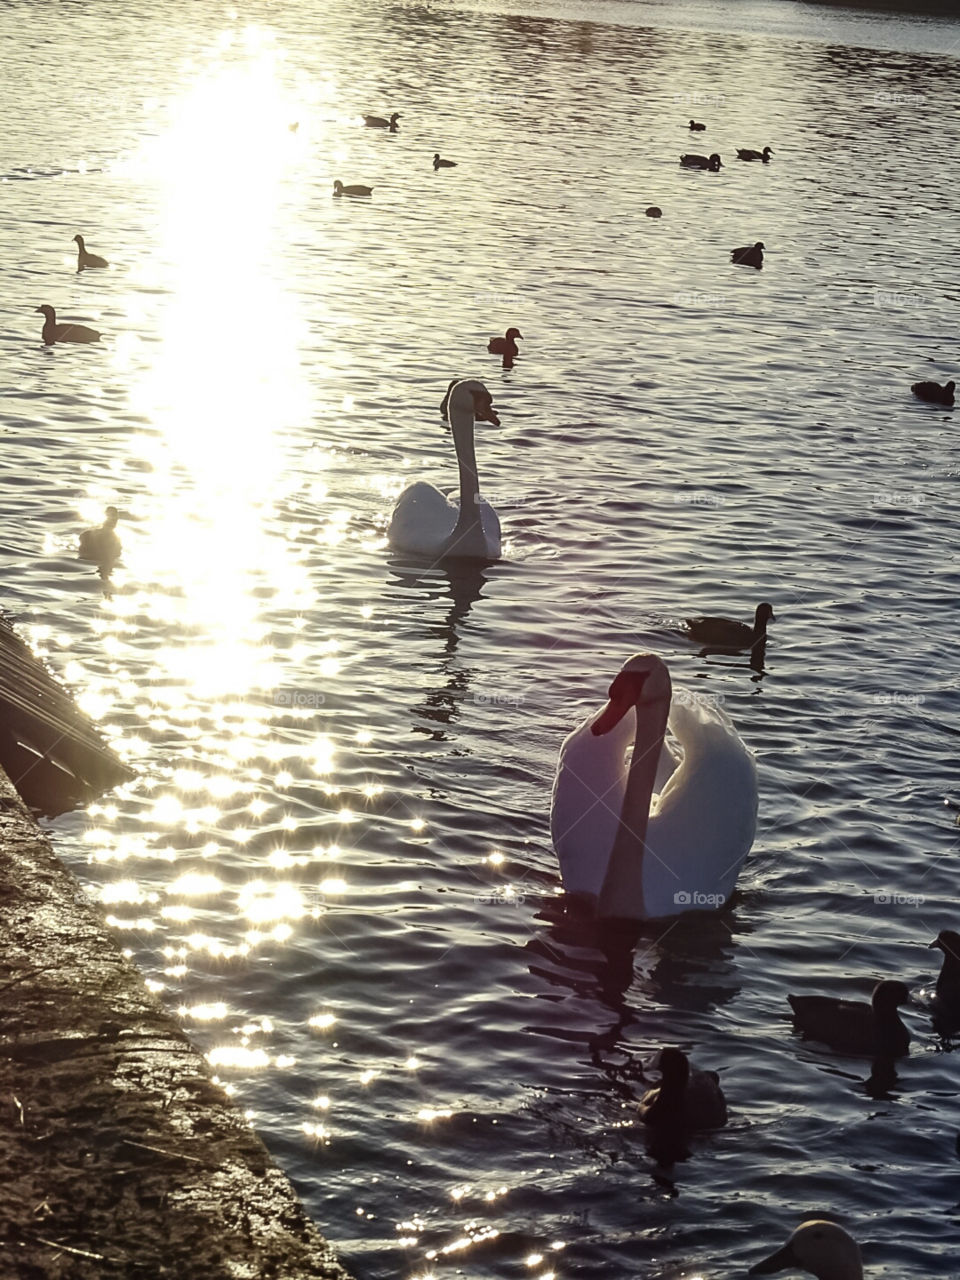 swans and ducks at lake